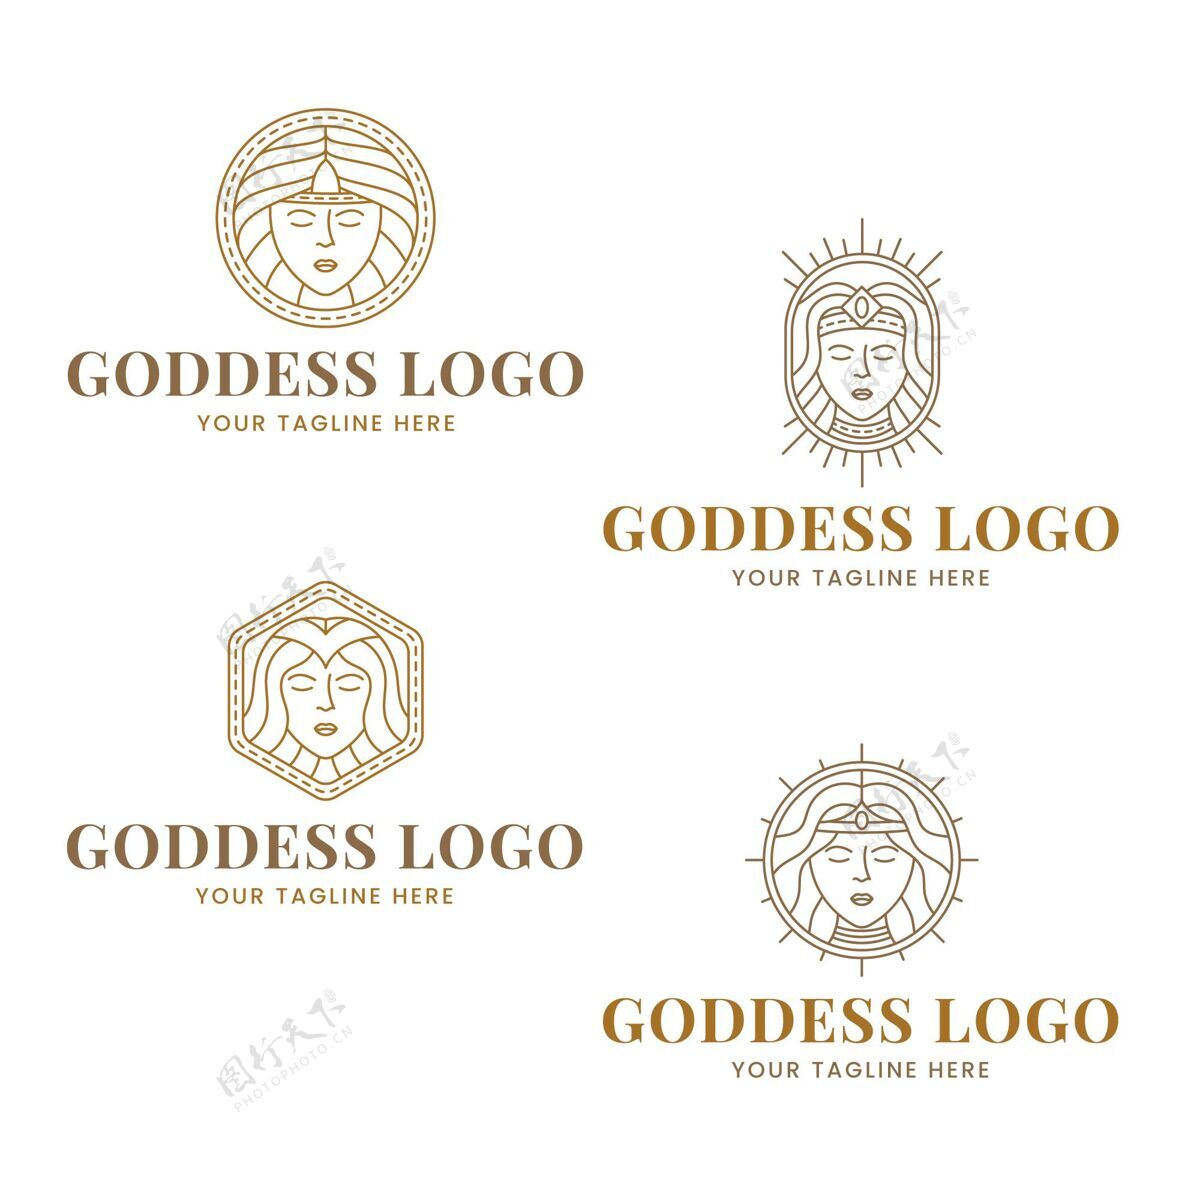 企业标识一套线性女神标志模板品牌公司企业